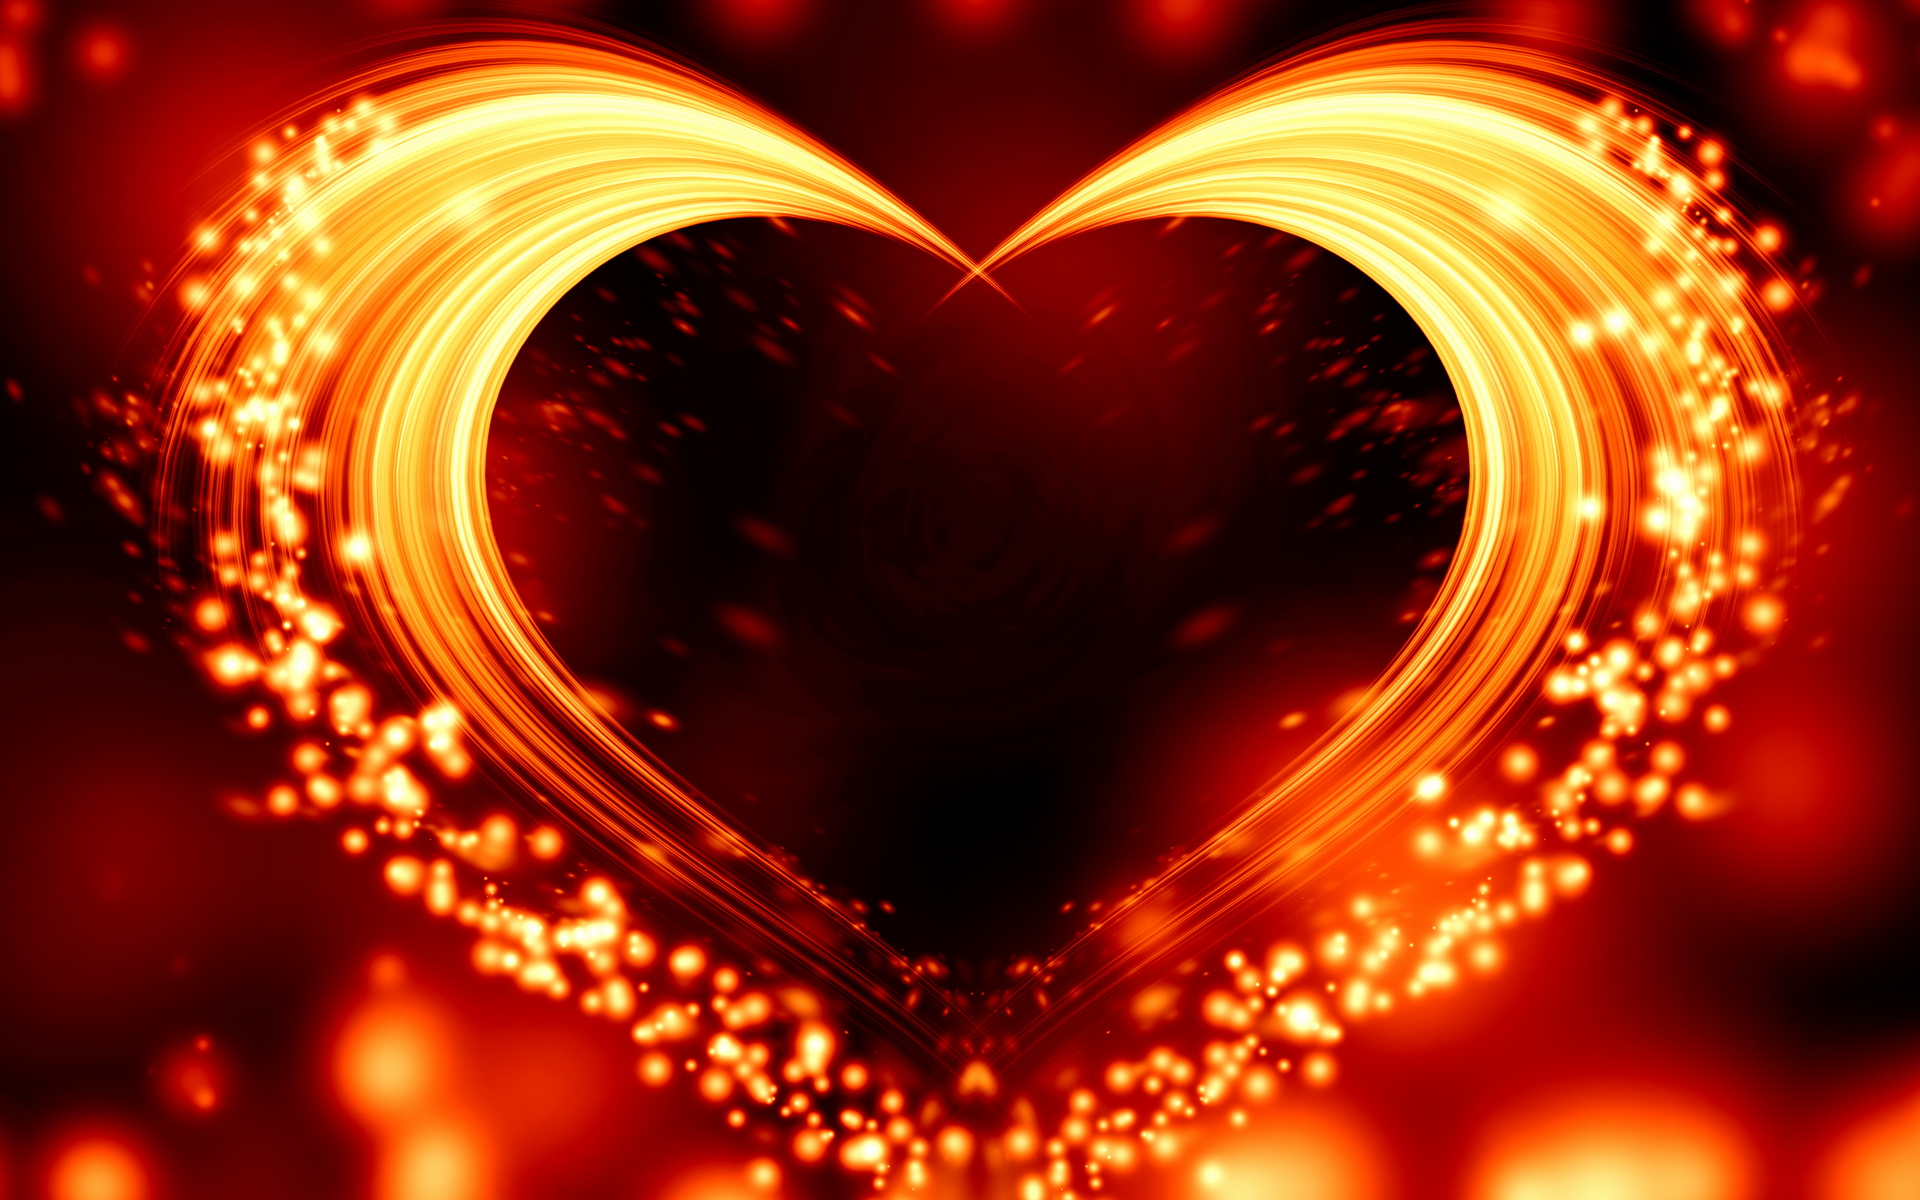 Heart In Love Wallpaper Hd Pixelstalknet